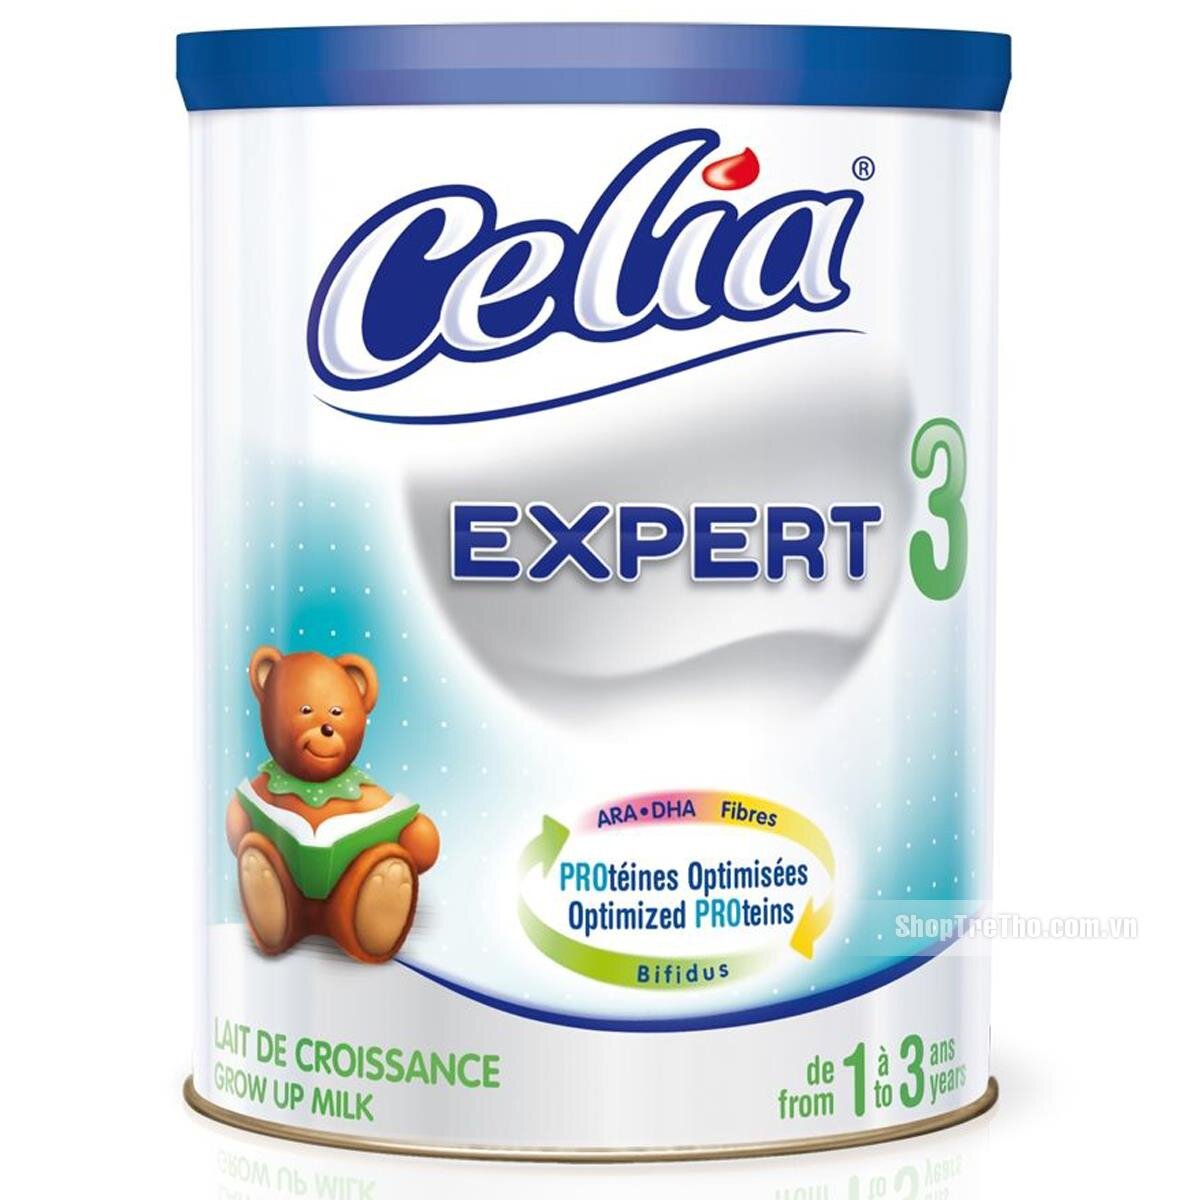 Sữa bột Celia Expert 3 dinh dưỡng cho bé từ 1 đến 3 tuổi